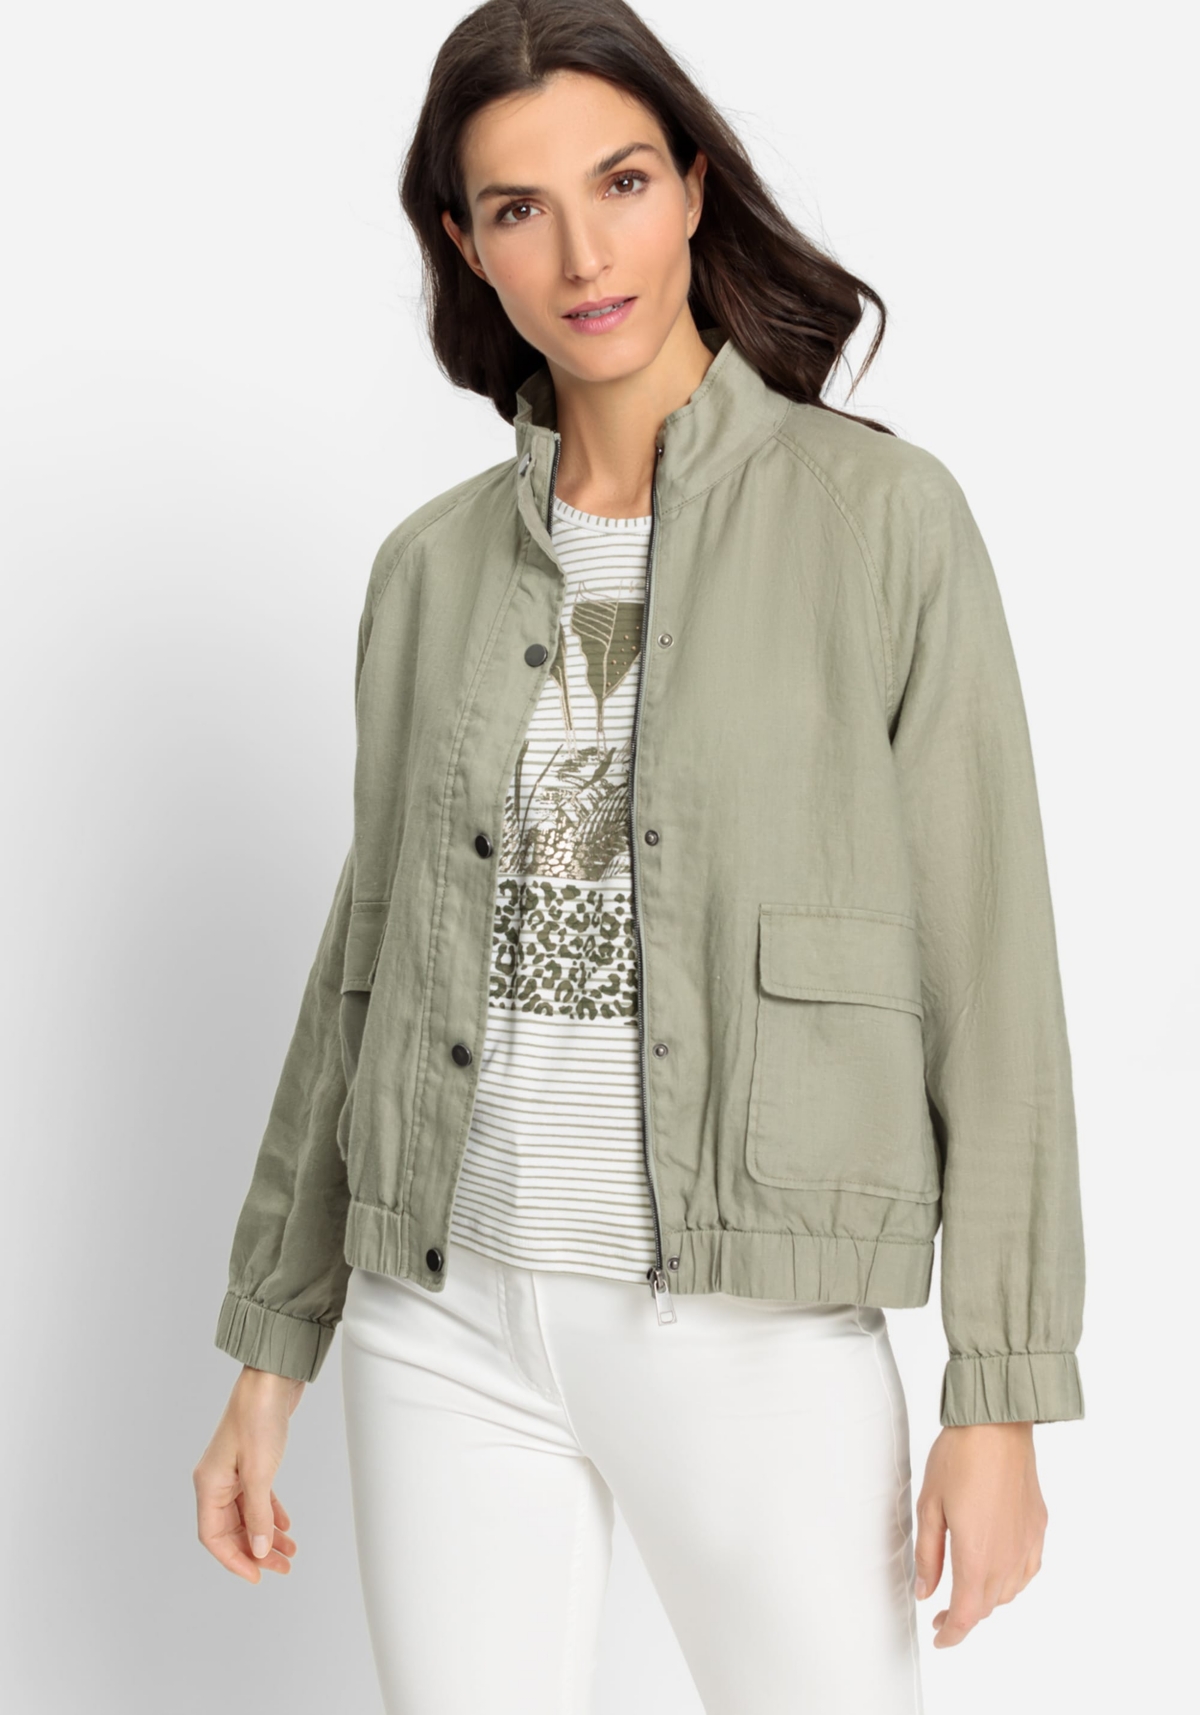 Women's 100% Linen High Collar Zip Front Jacket - Light khaki